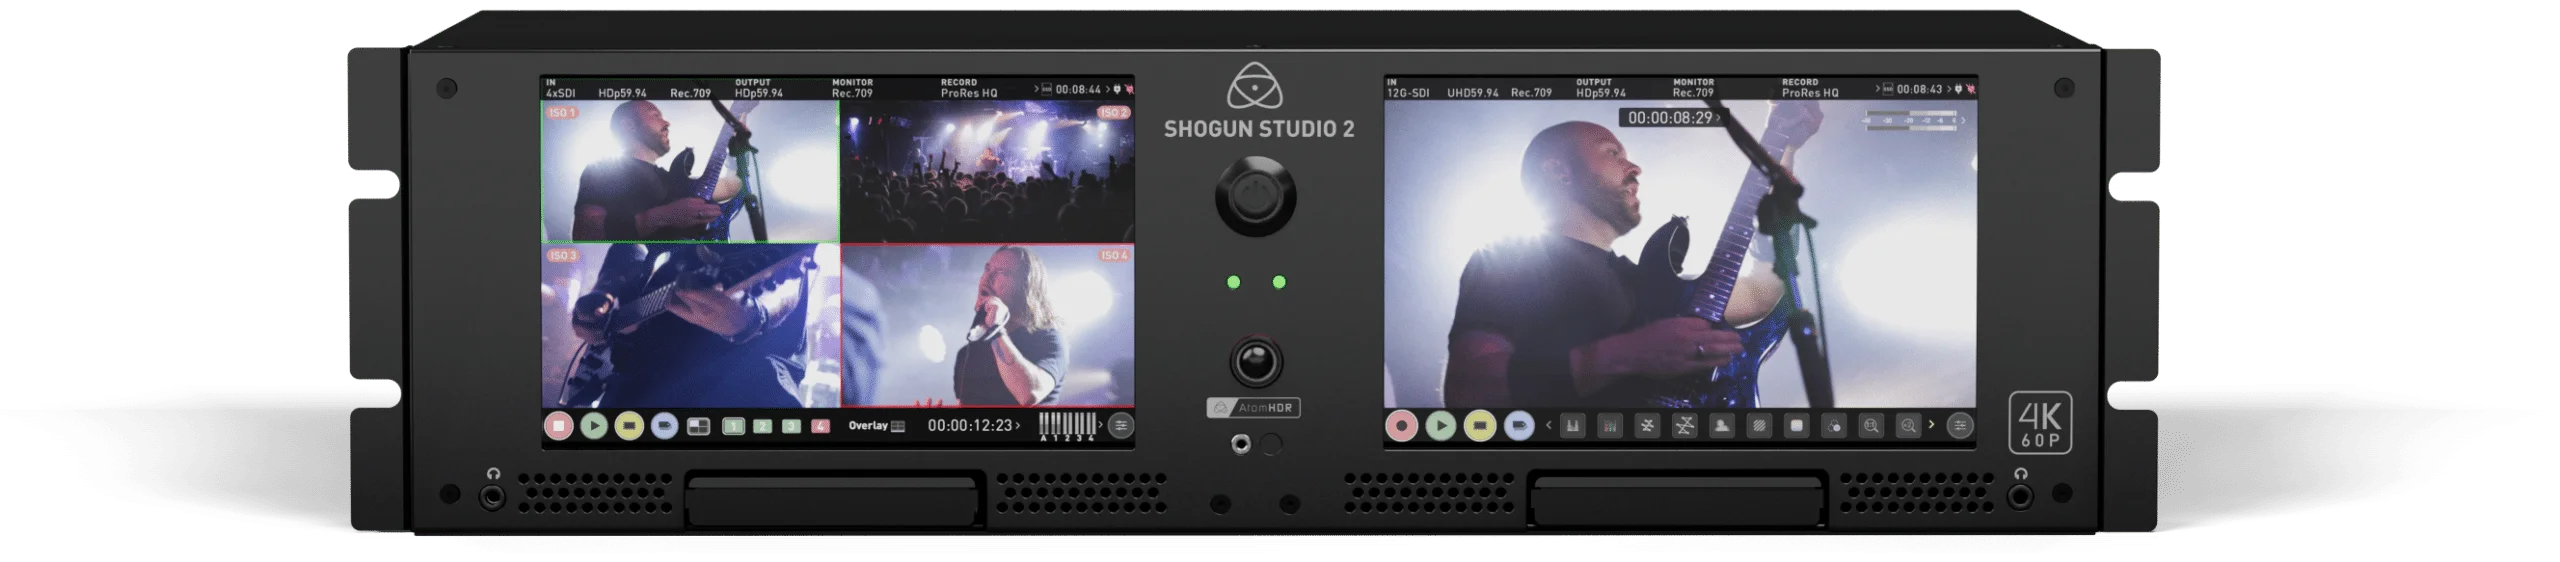 Shogun-Studio-2